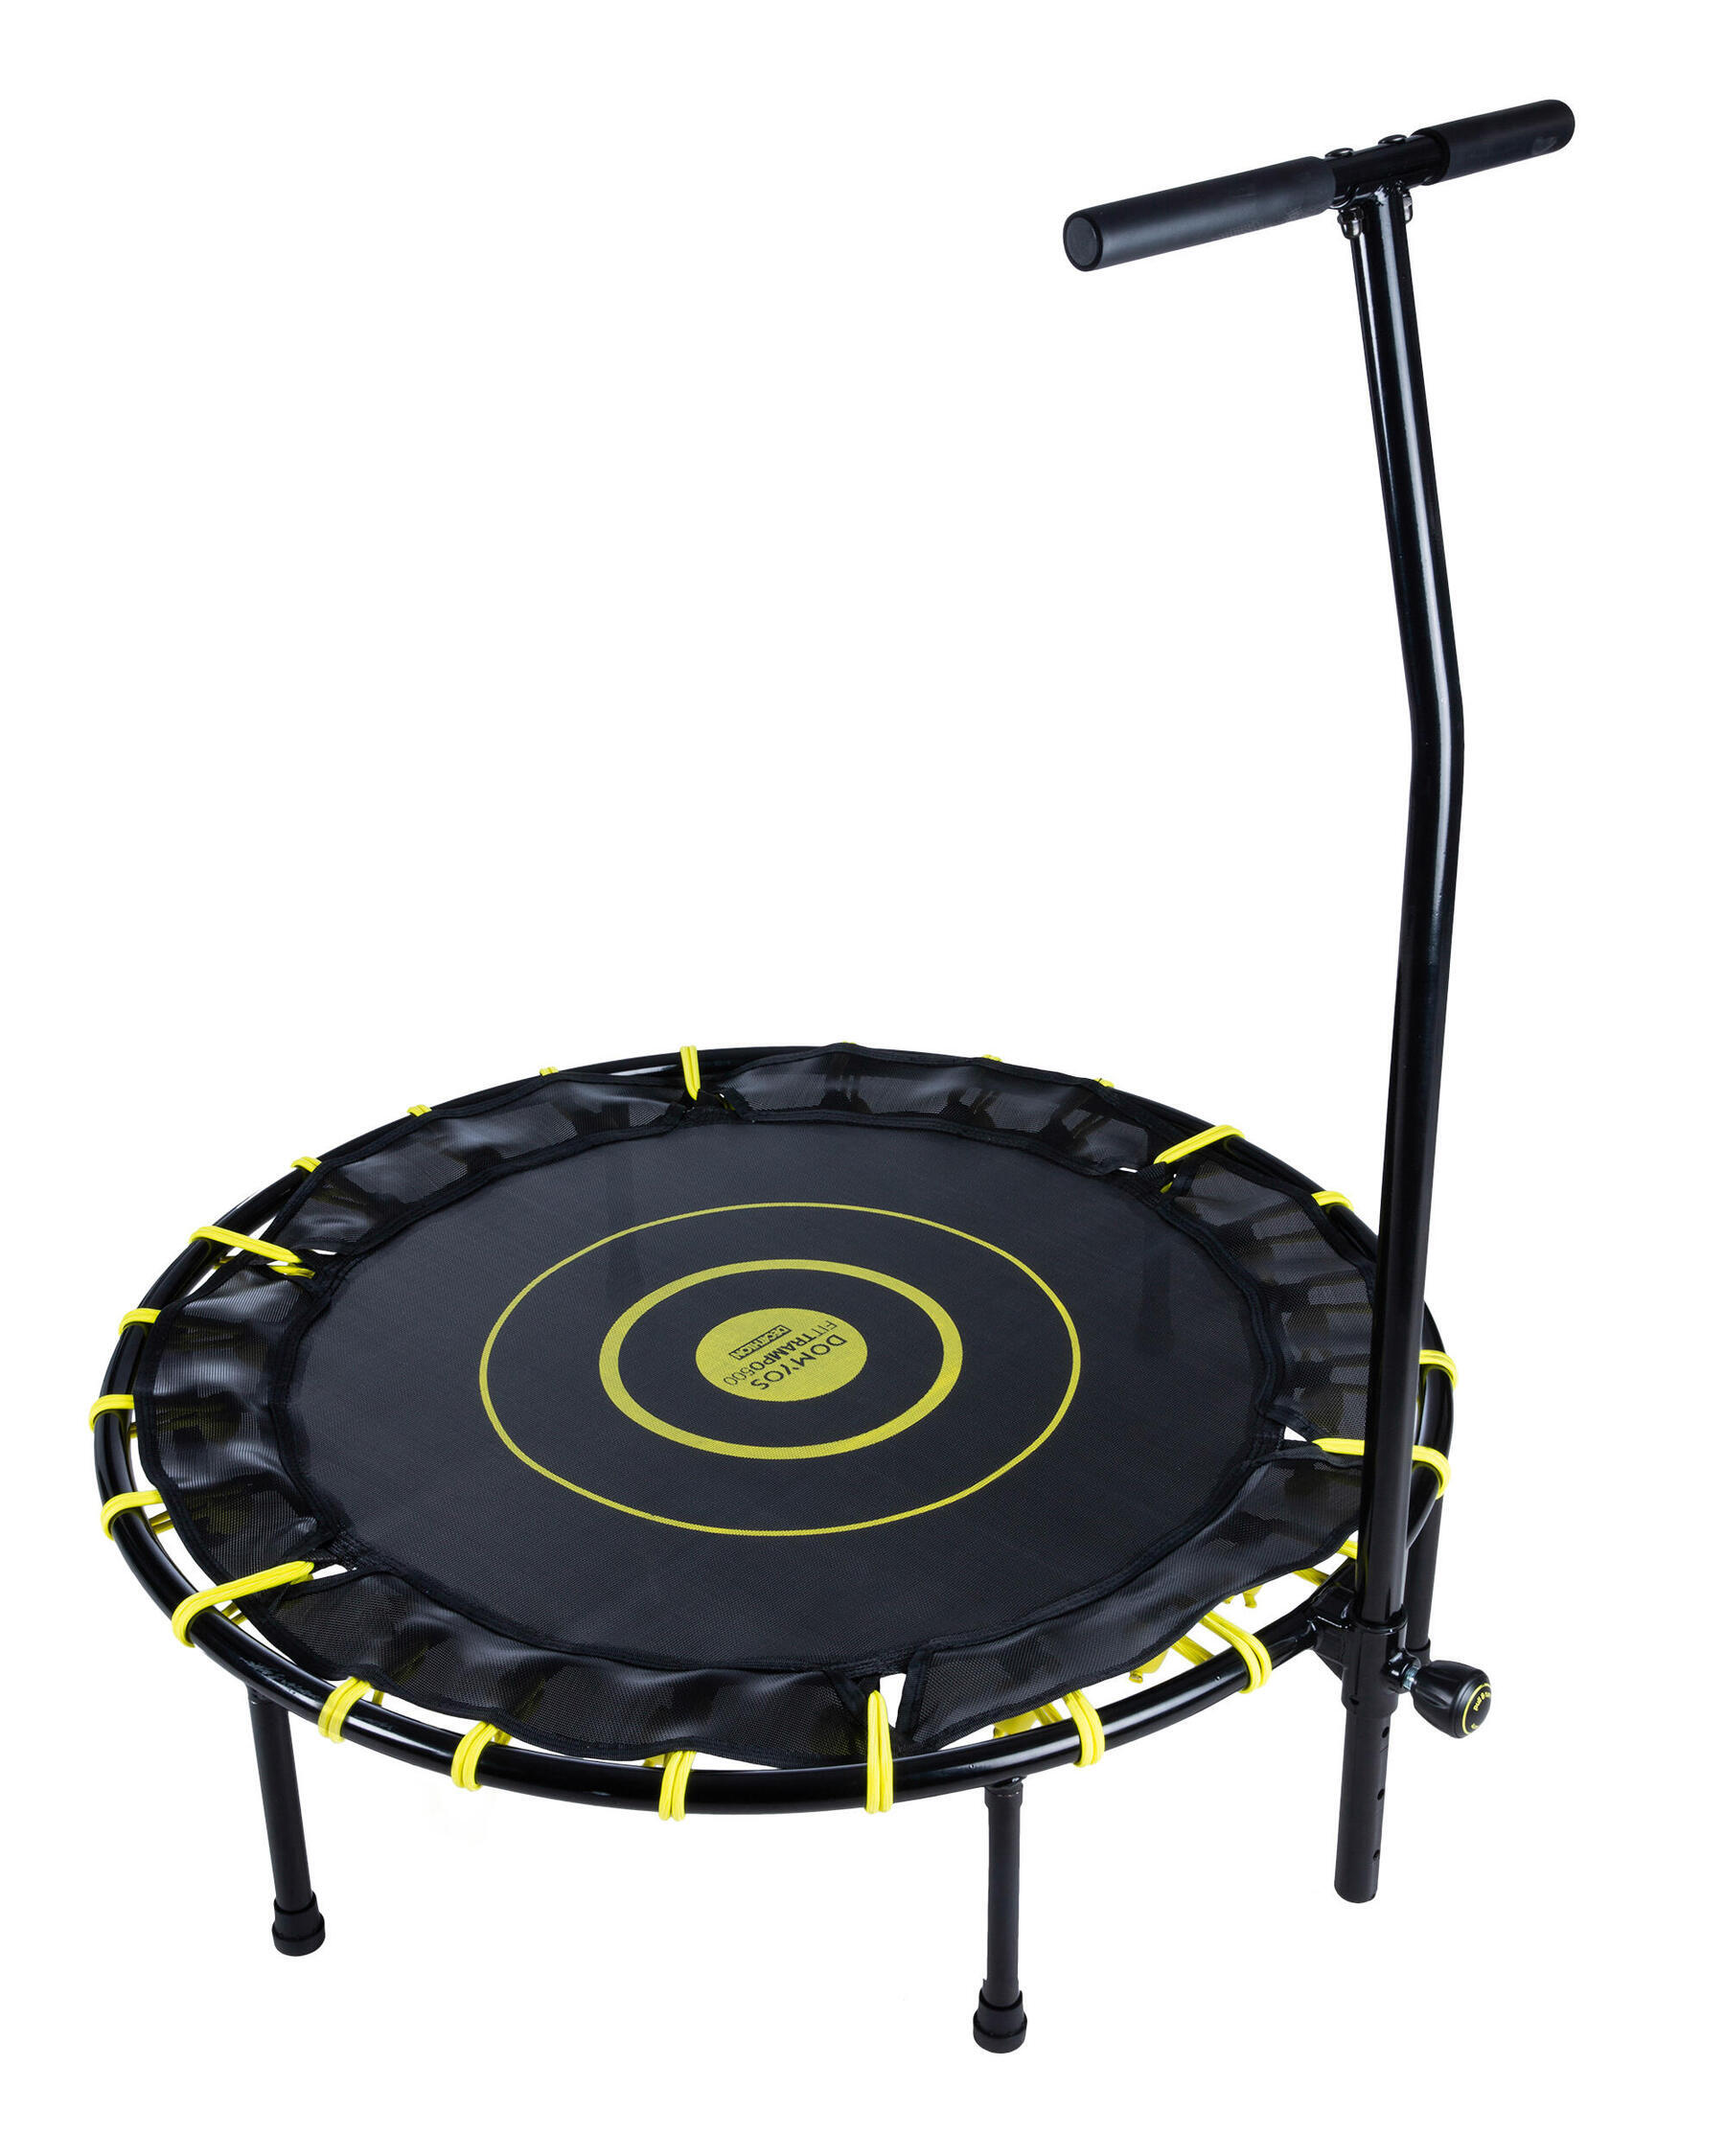 Wsparcie techniczne trampoliny Domyos FIT trampo500: użytkowanie